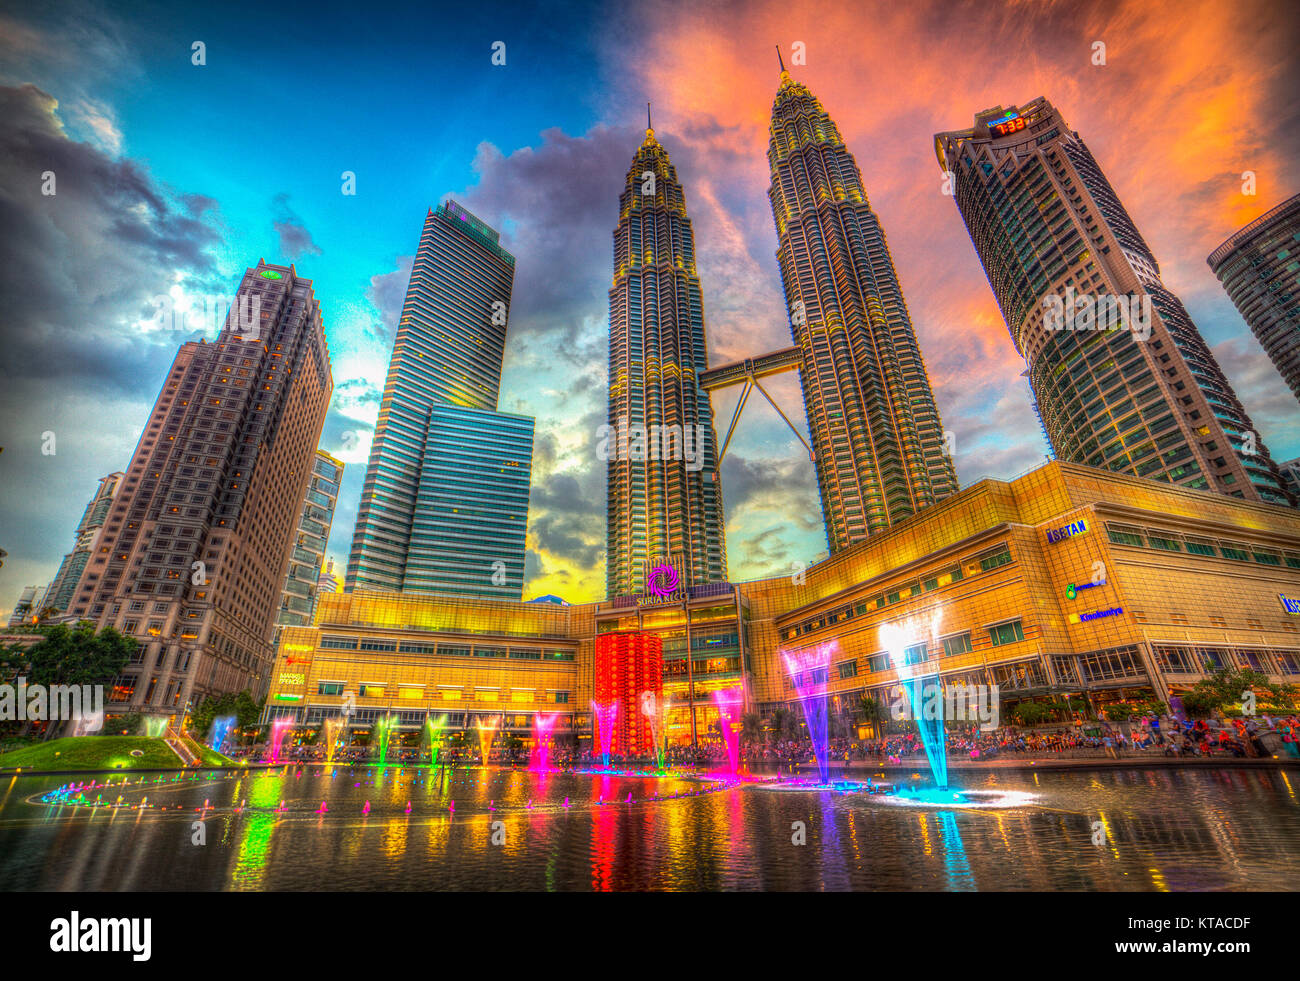 La lumière et l'eau colorée montre de divertir les internautes et les visiteurs de la piscine tous les soirs à la centre commercial Suria KLCC, Kuala Lumpur, Malaisie. Banque D'Images